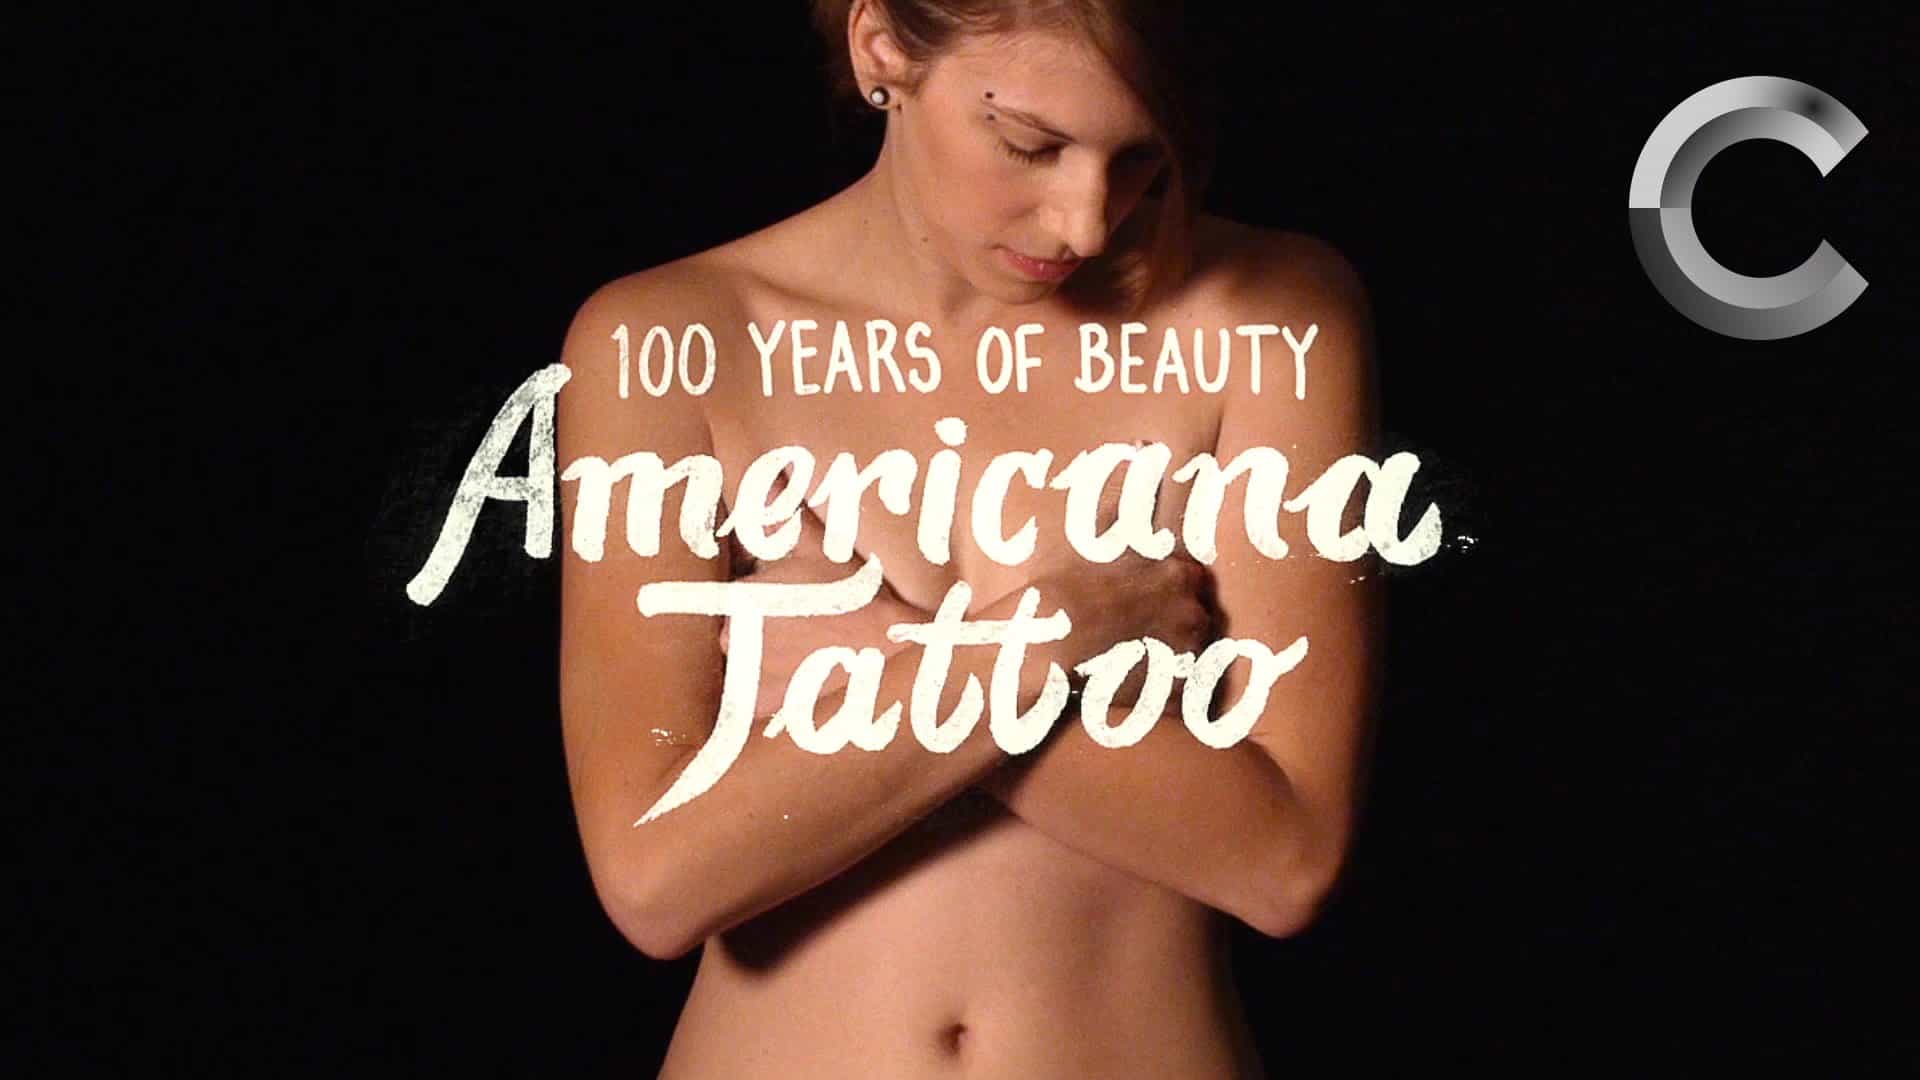 Tatuaże w stylu ostatnich 100 lat